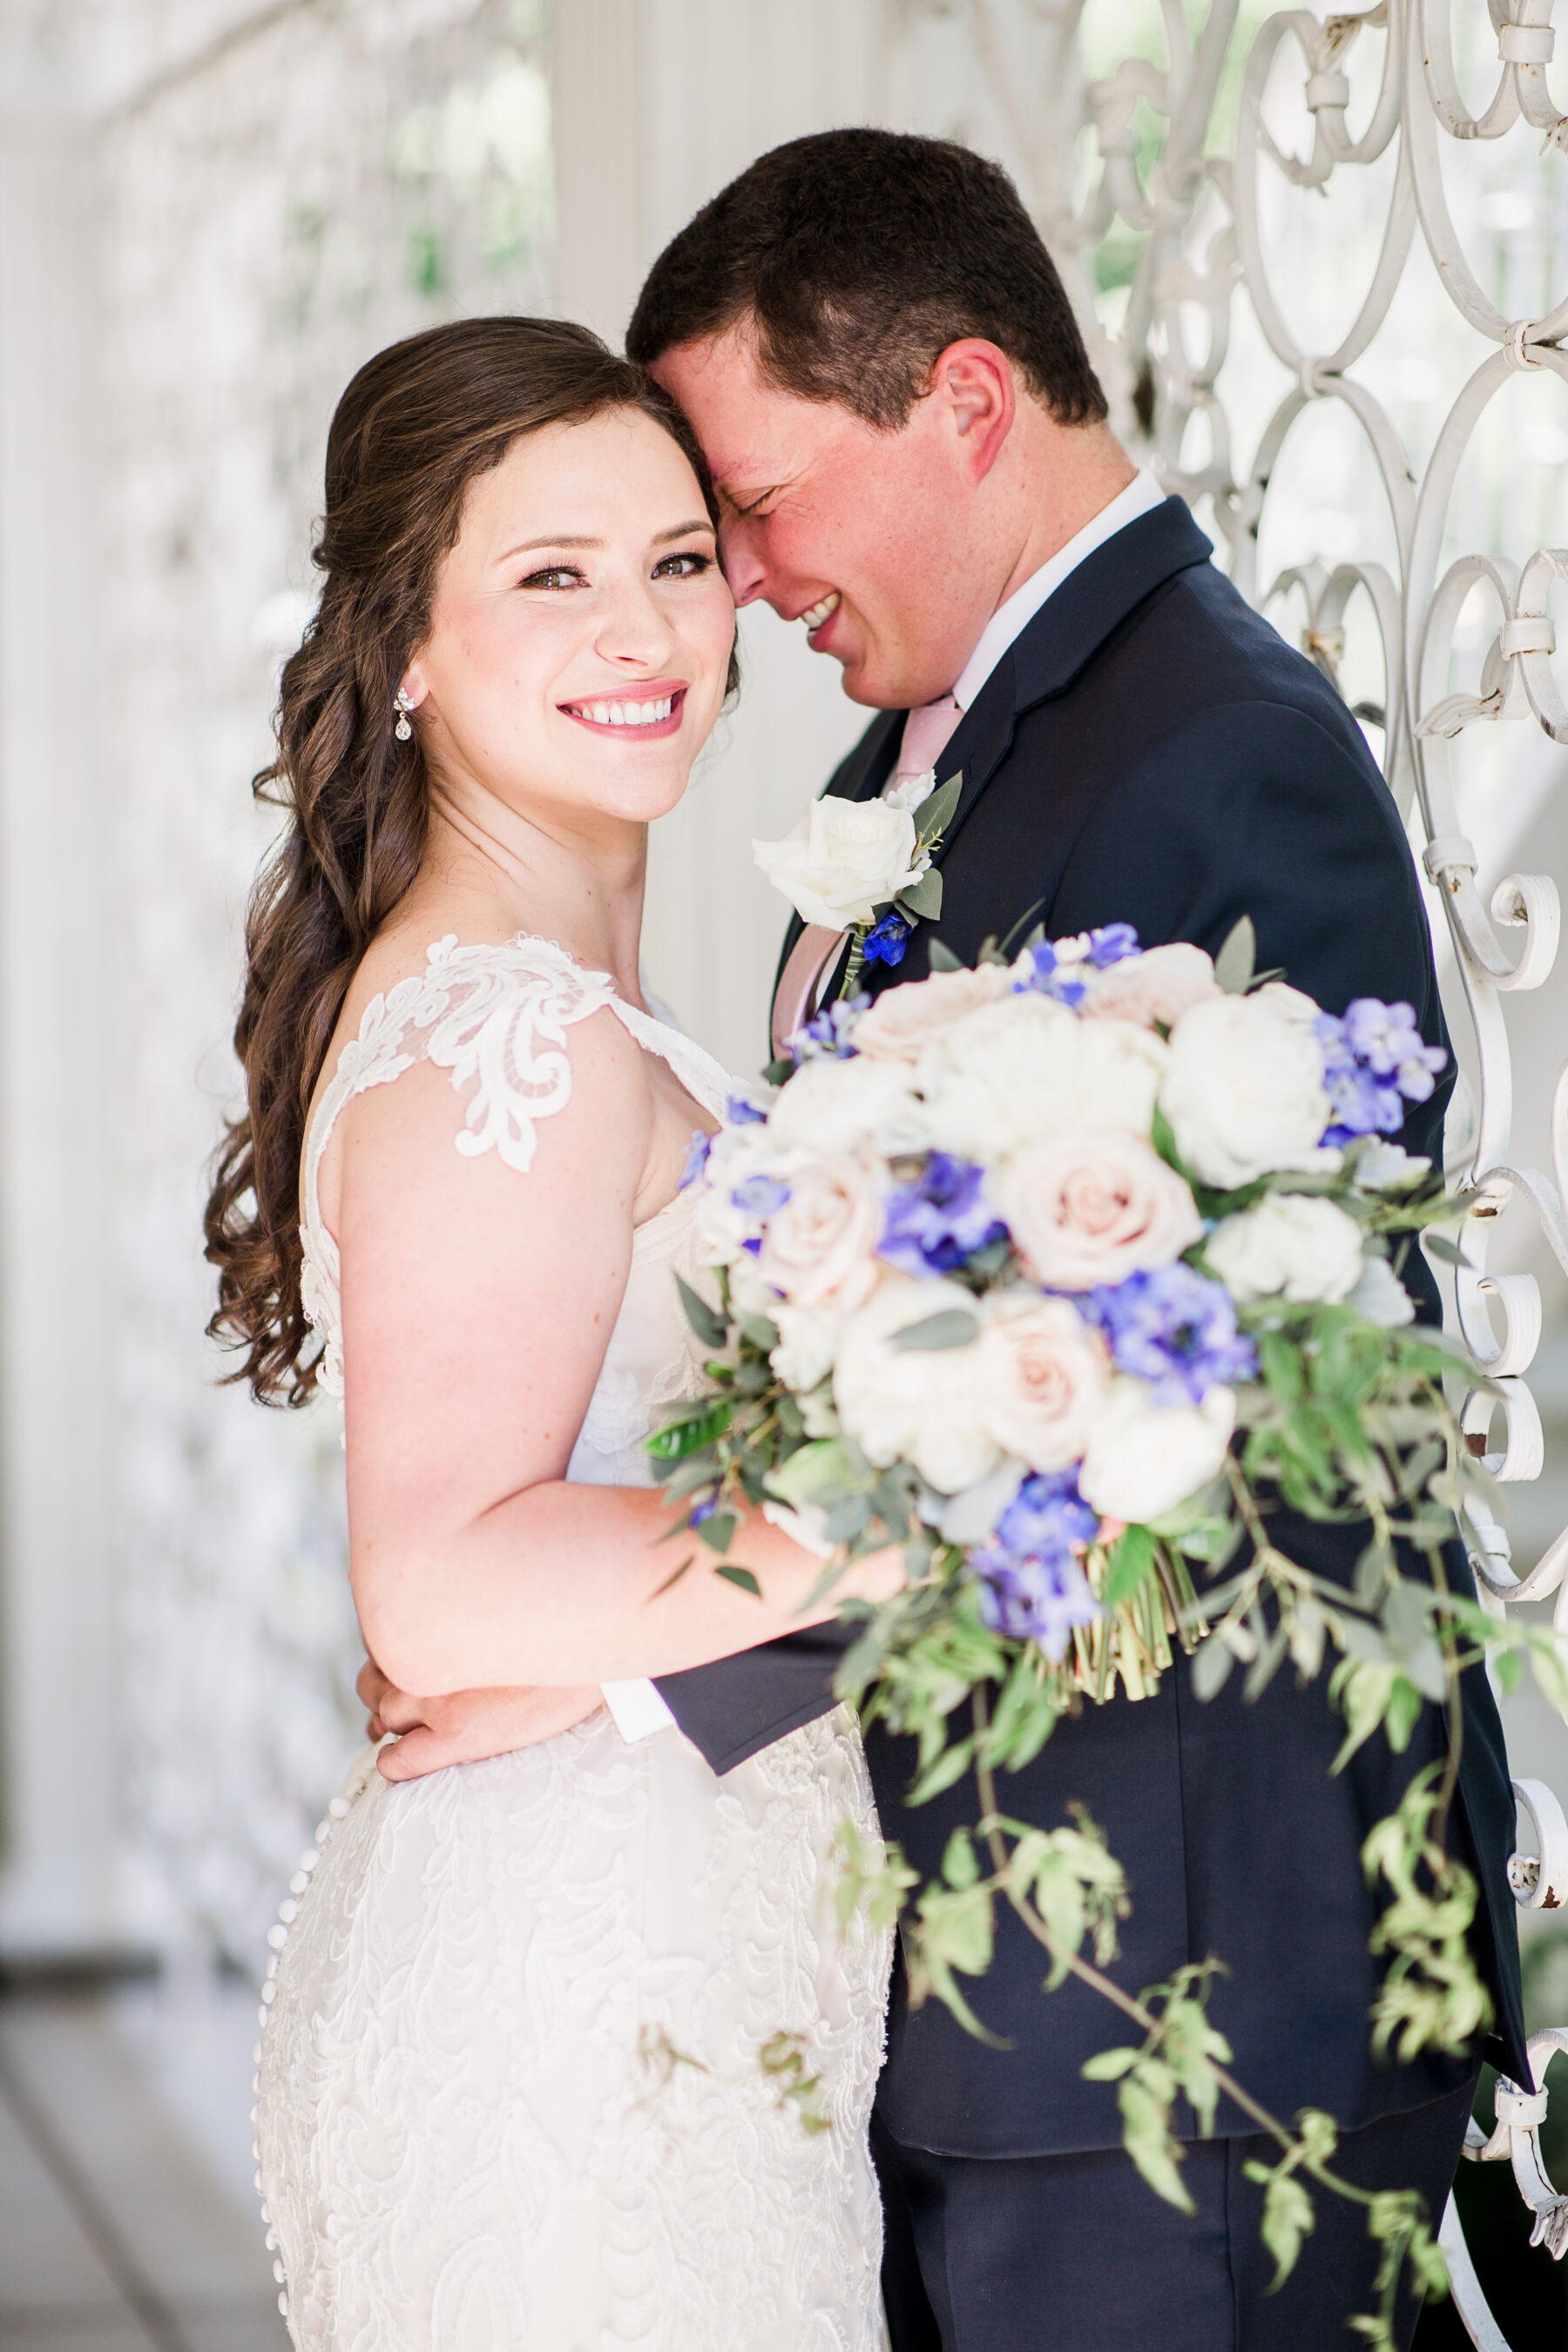 Romantic Garden Wedding at CJ's Off the Square | Nashville Bride Guide